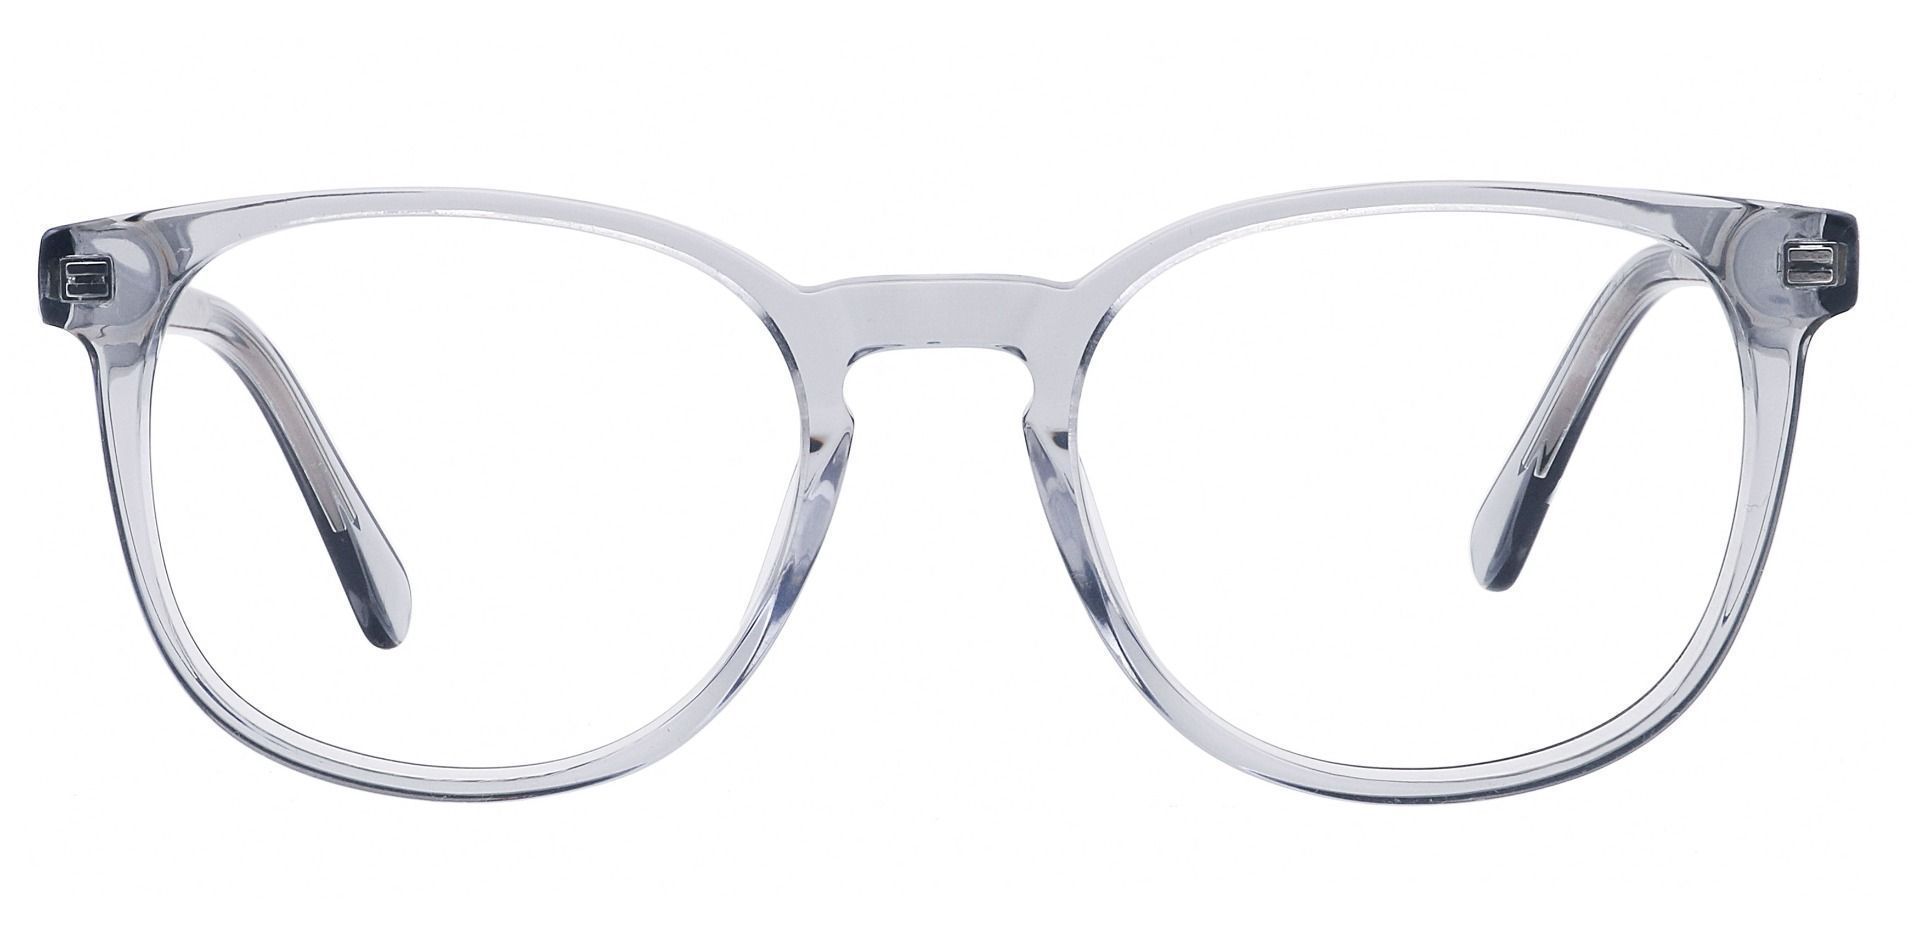 Nebula Round Eyeglasses Frame - Gray